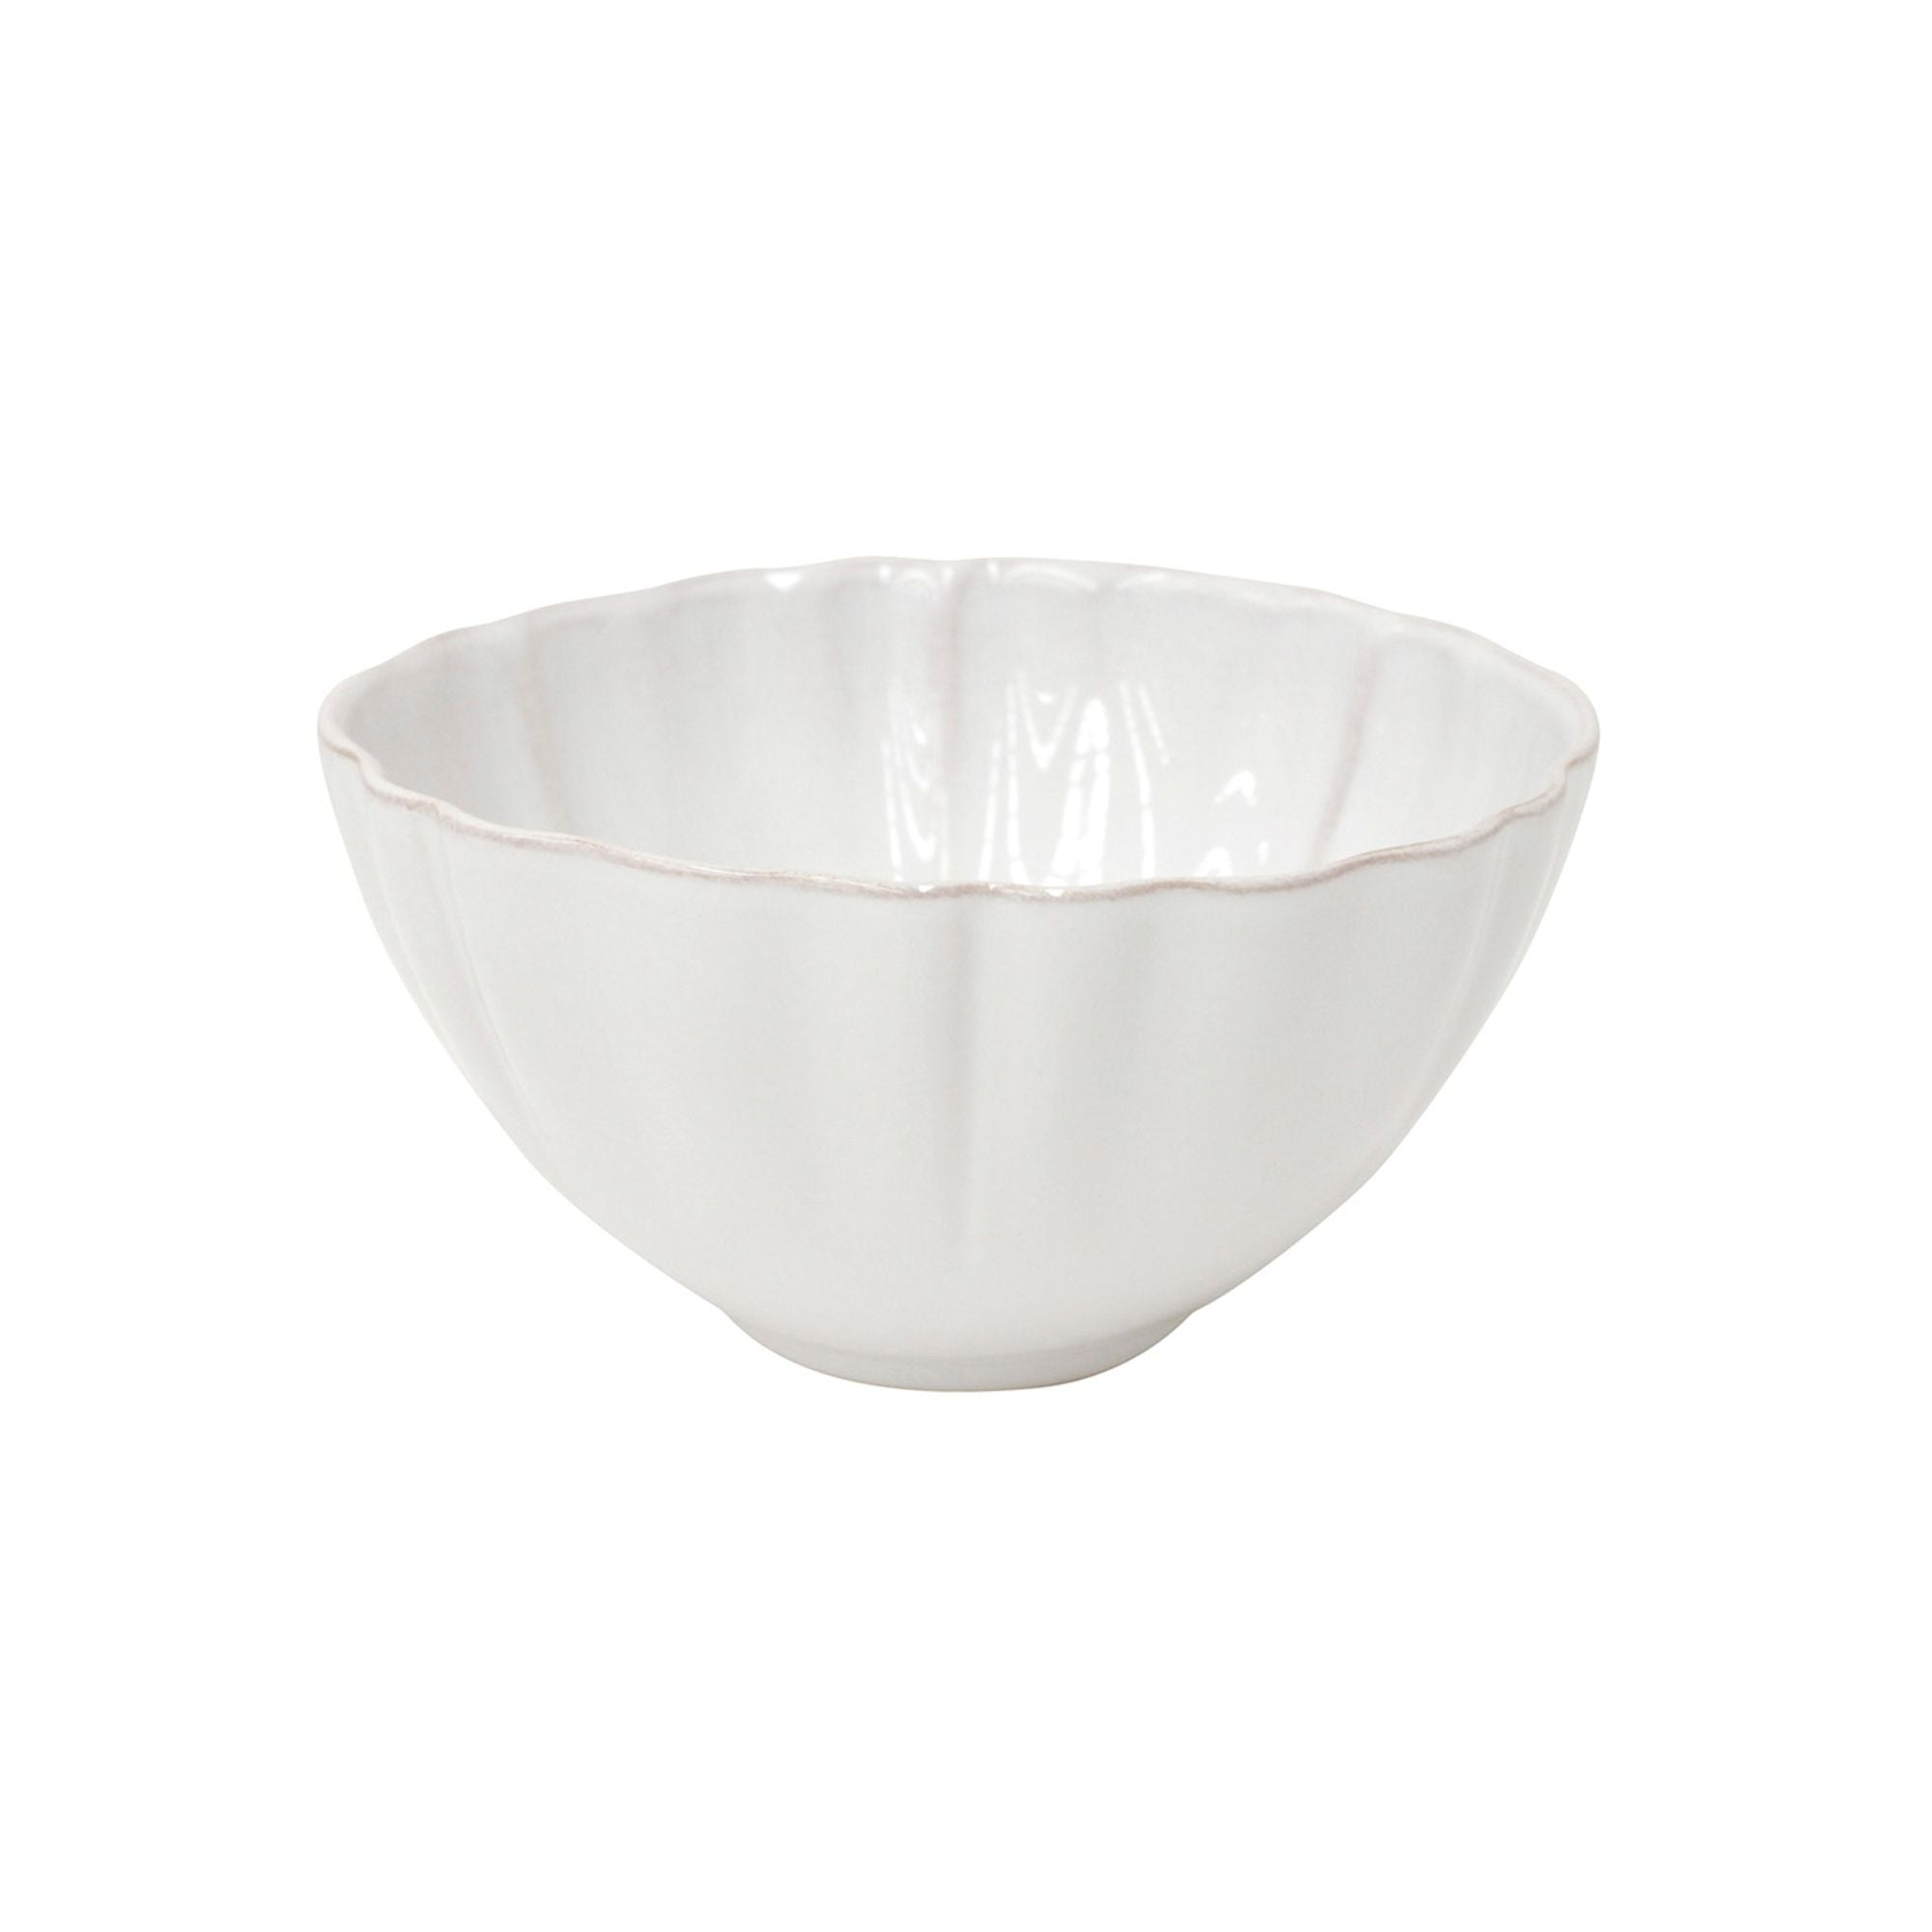 Alentejo Soup/Cereal Bowl 6" White